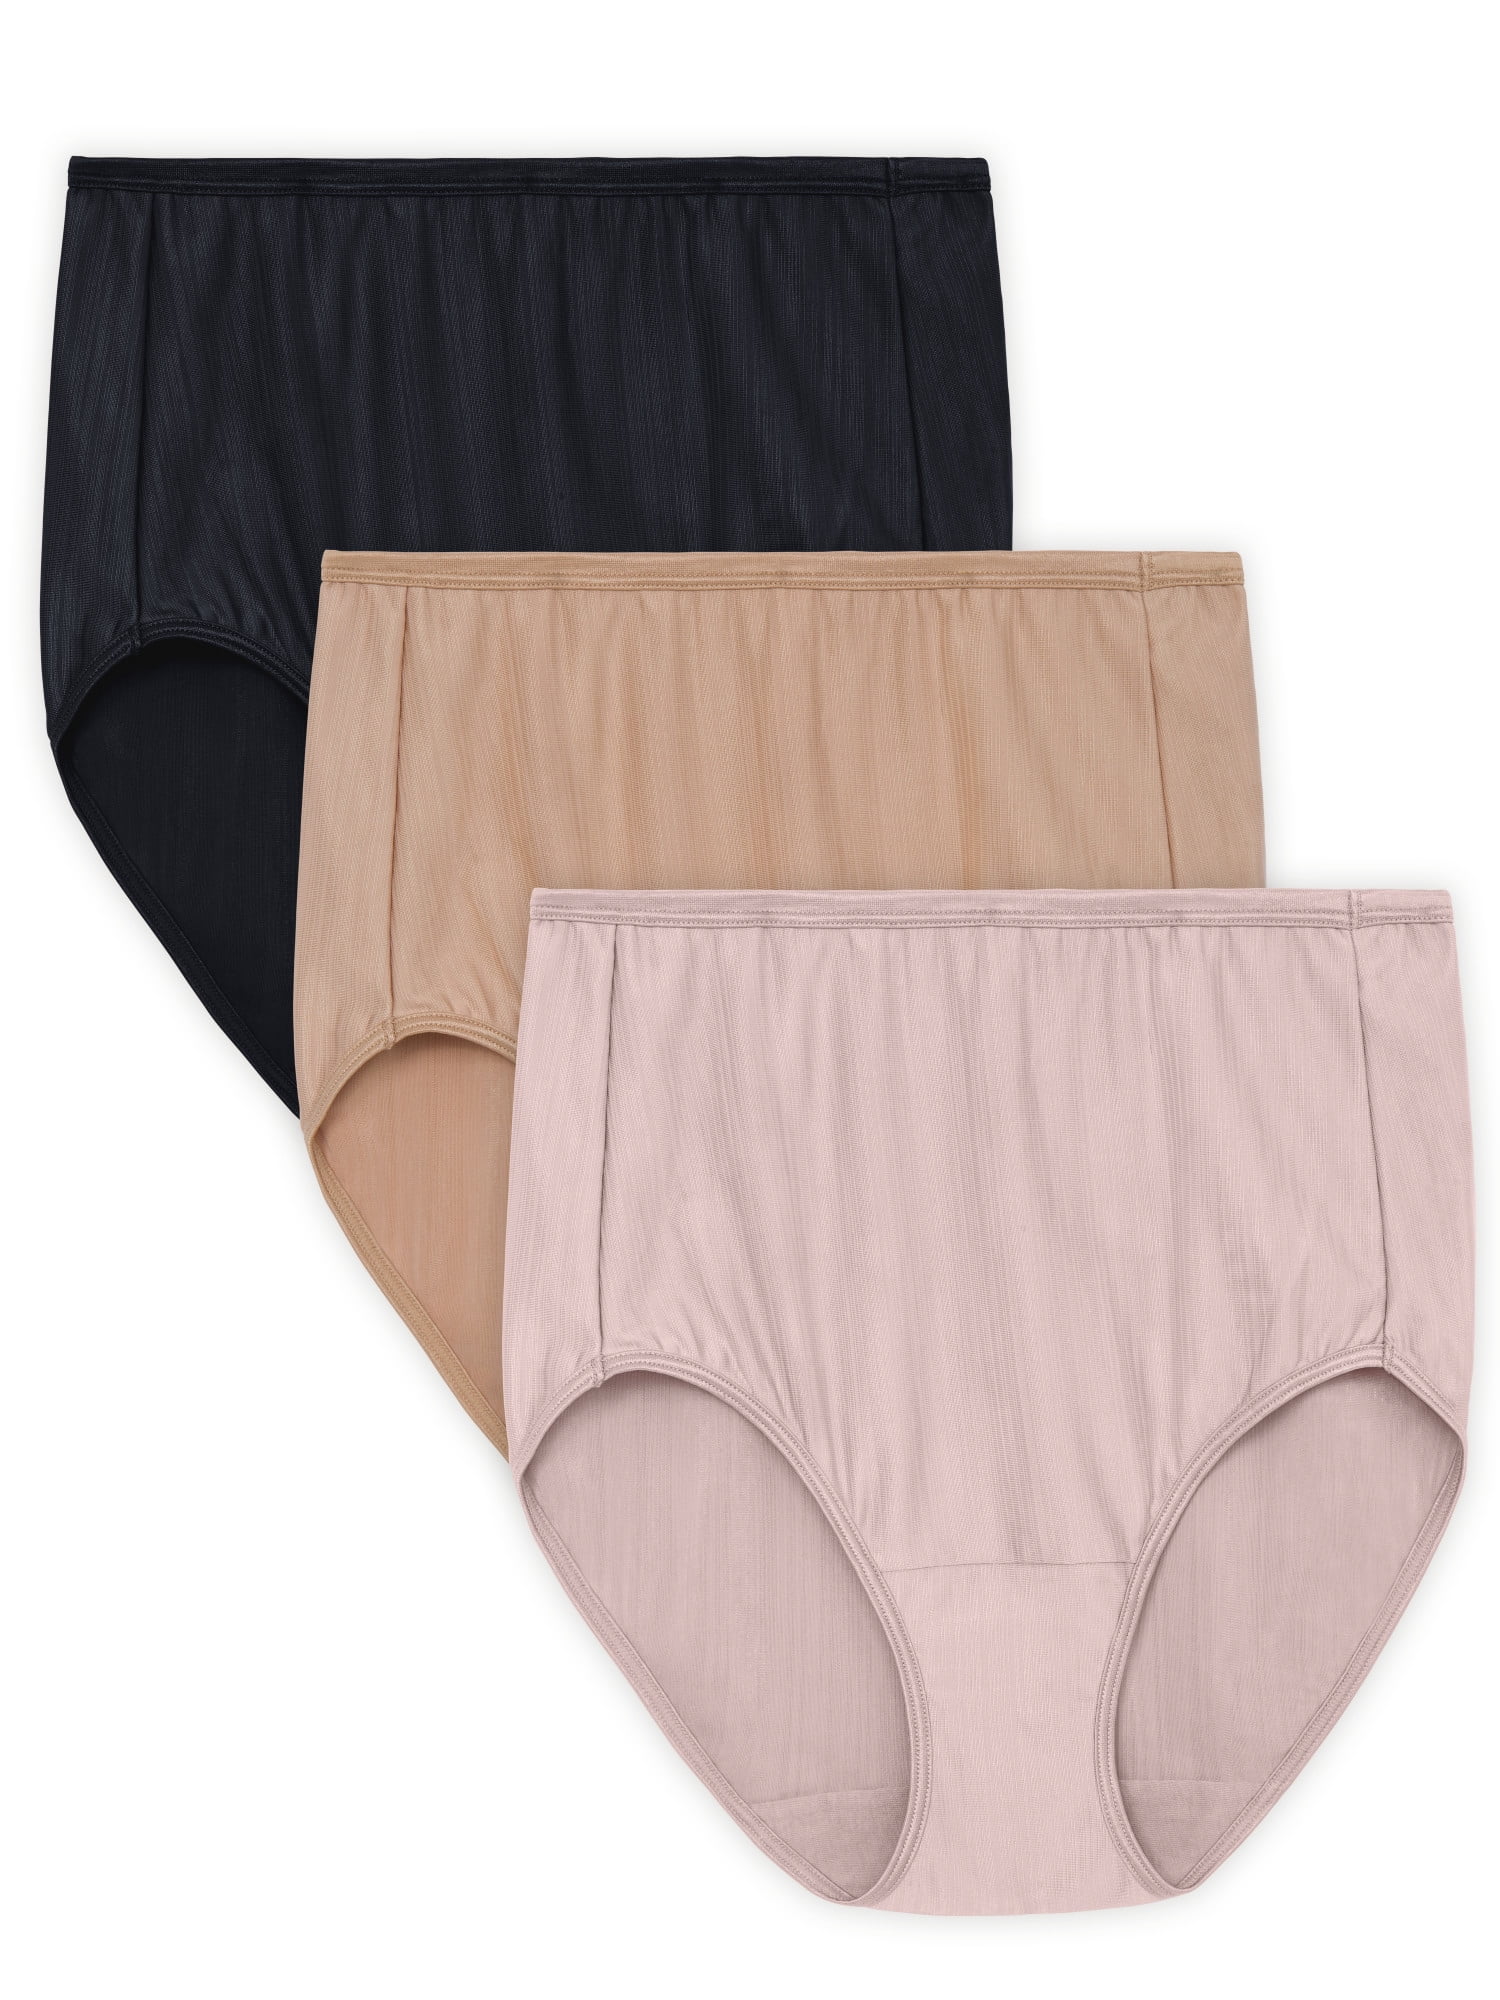 Calvin Klein Women's CK One Micro Brazilian Panty, Black Ambient Lavender  XL 